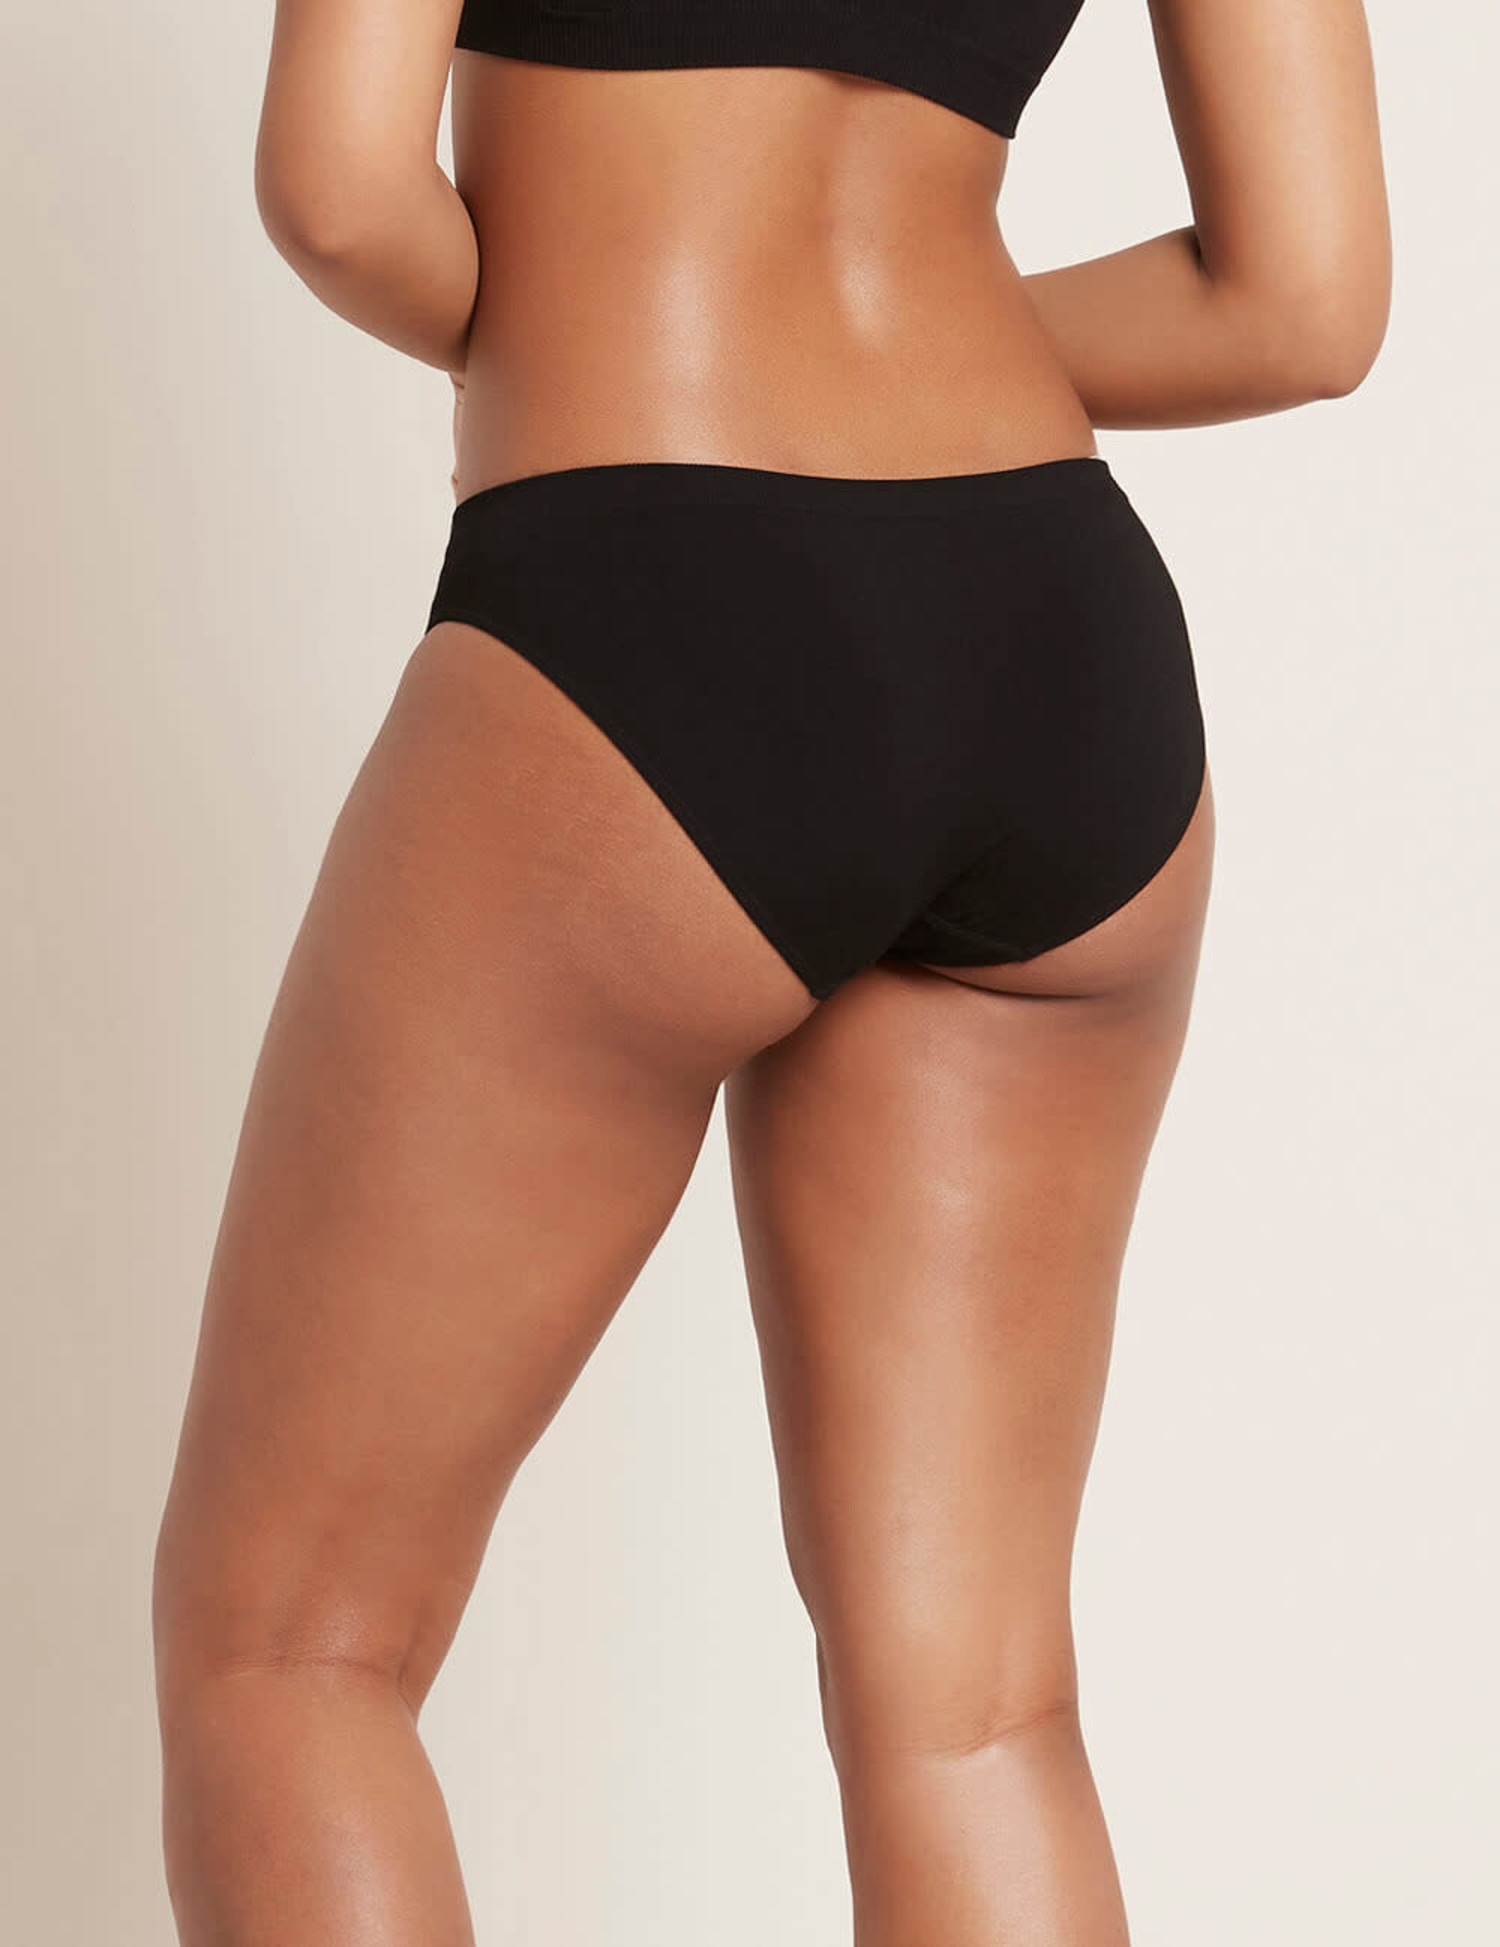 Boody Women's Brazilian Bikini Underwear - Cheeky Underwear for